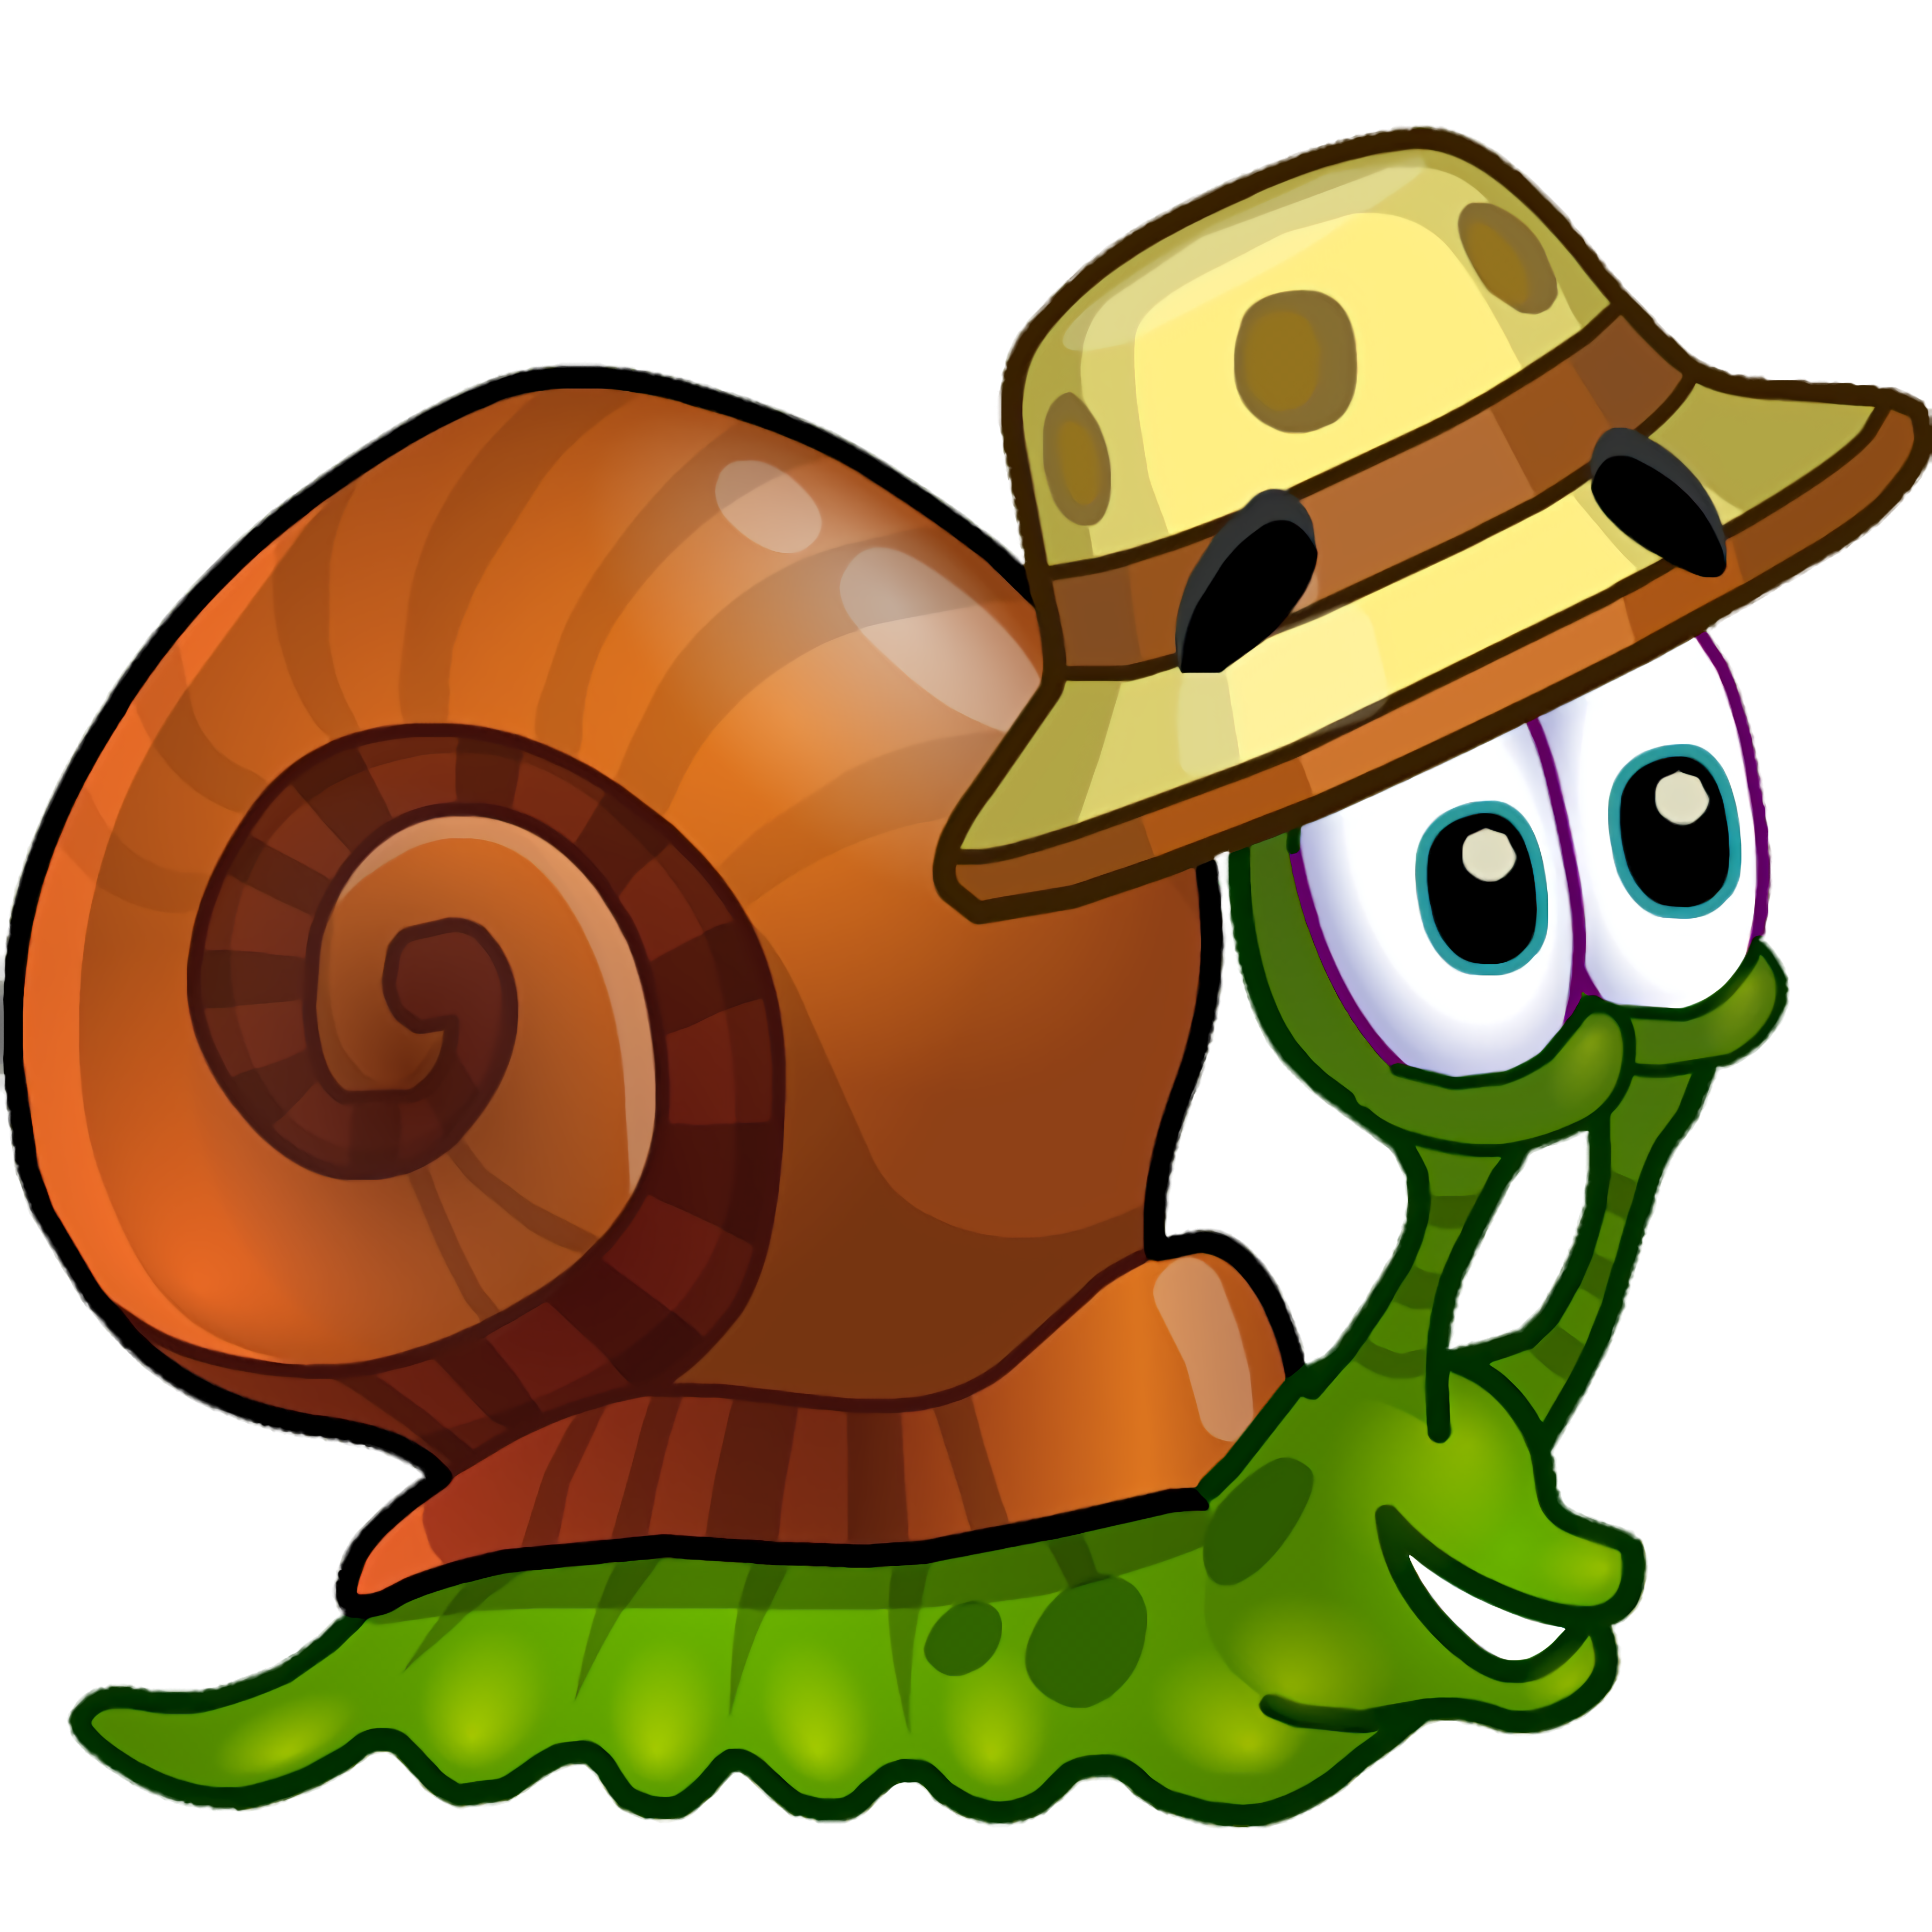 เกมส์ Snail Bob